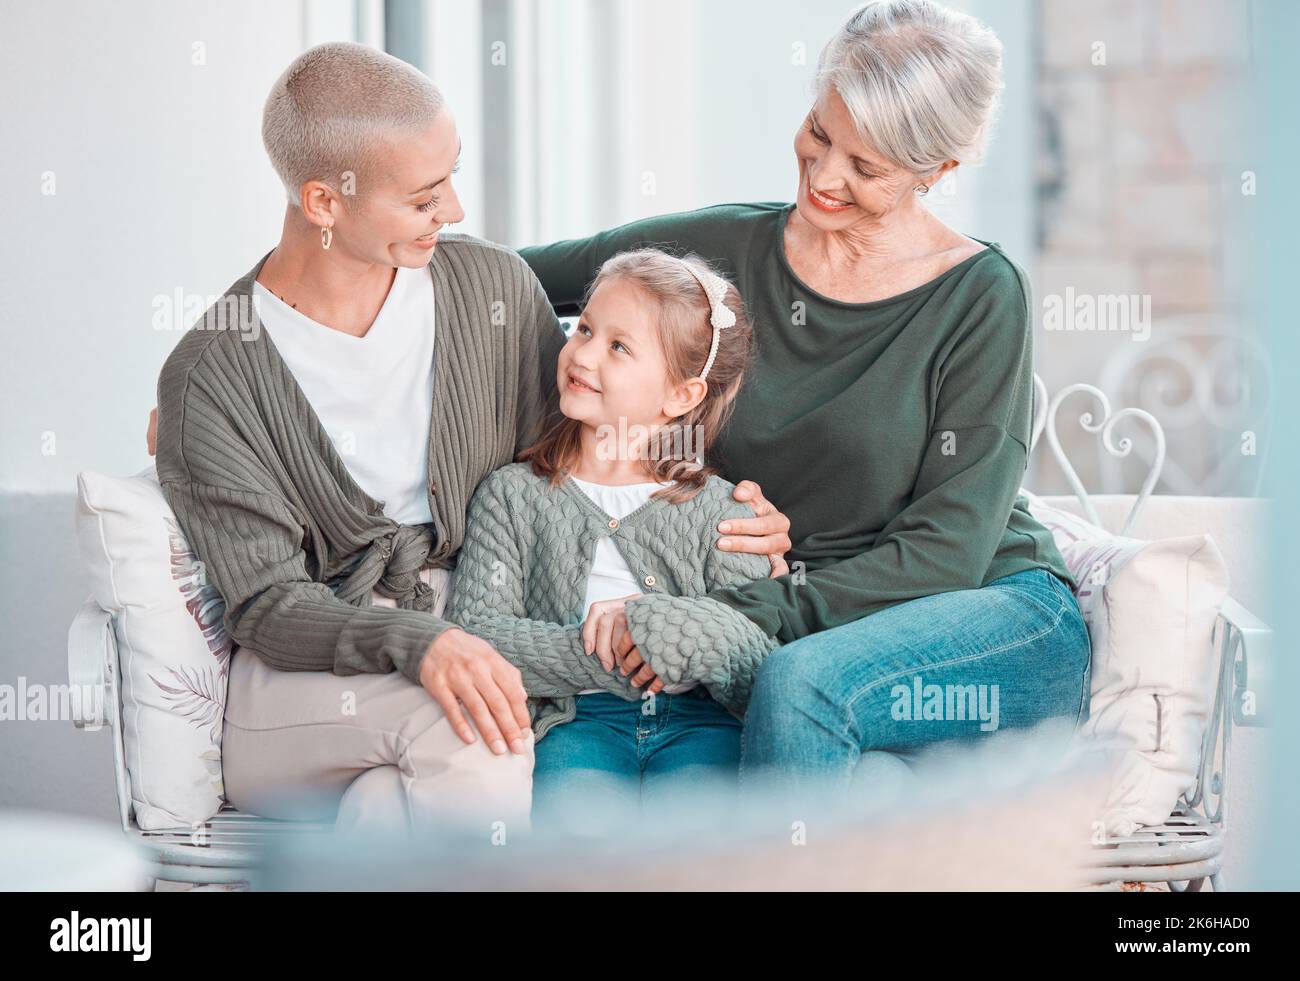 Drei Generationen von Frauen sitzen zusammen und schauen sich gegenseitig an. Liebenswert kleines Mädchen Bonding mit ihrer Mutter und Großmutter zu Hause Stockfoto